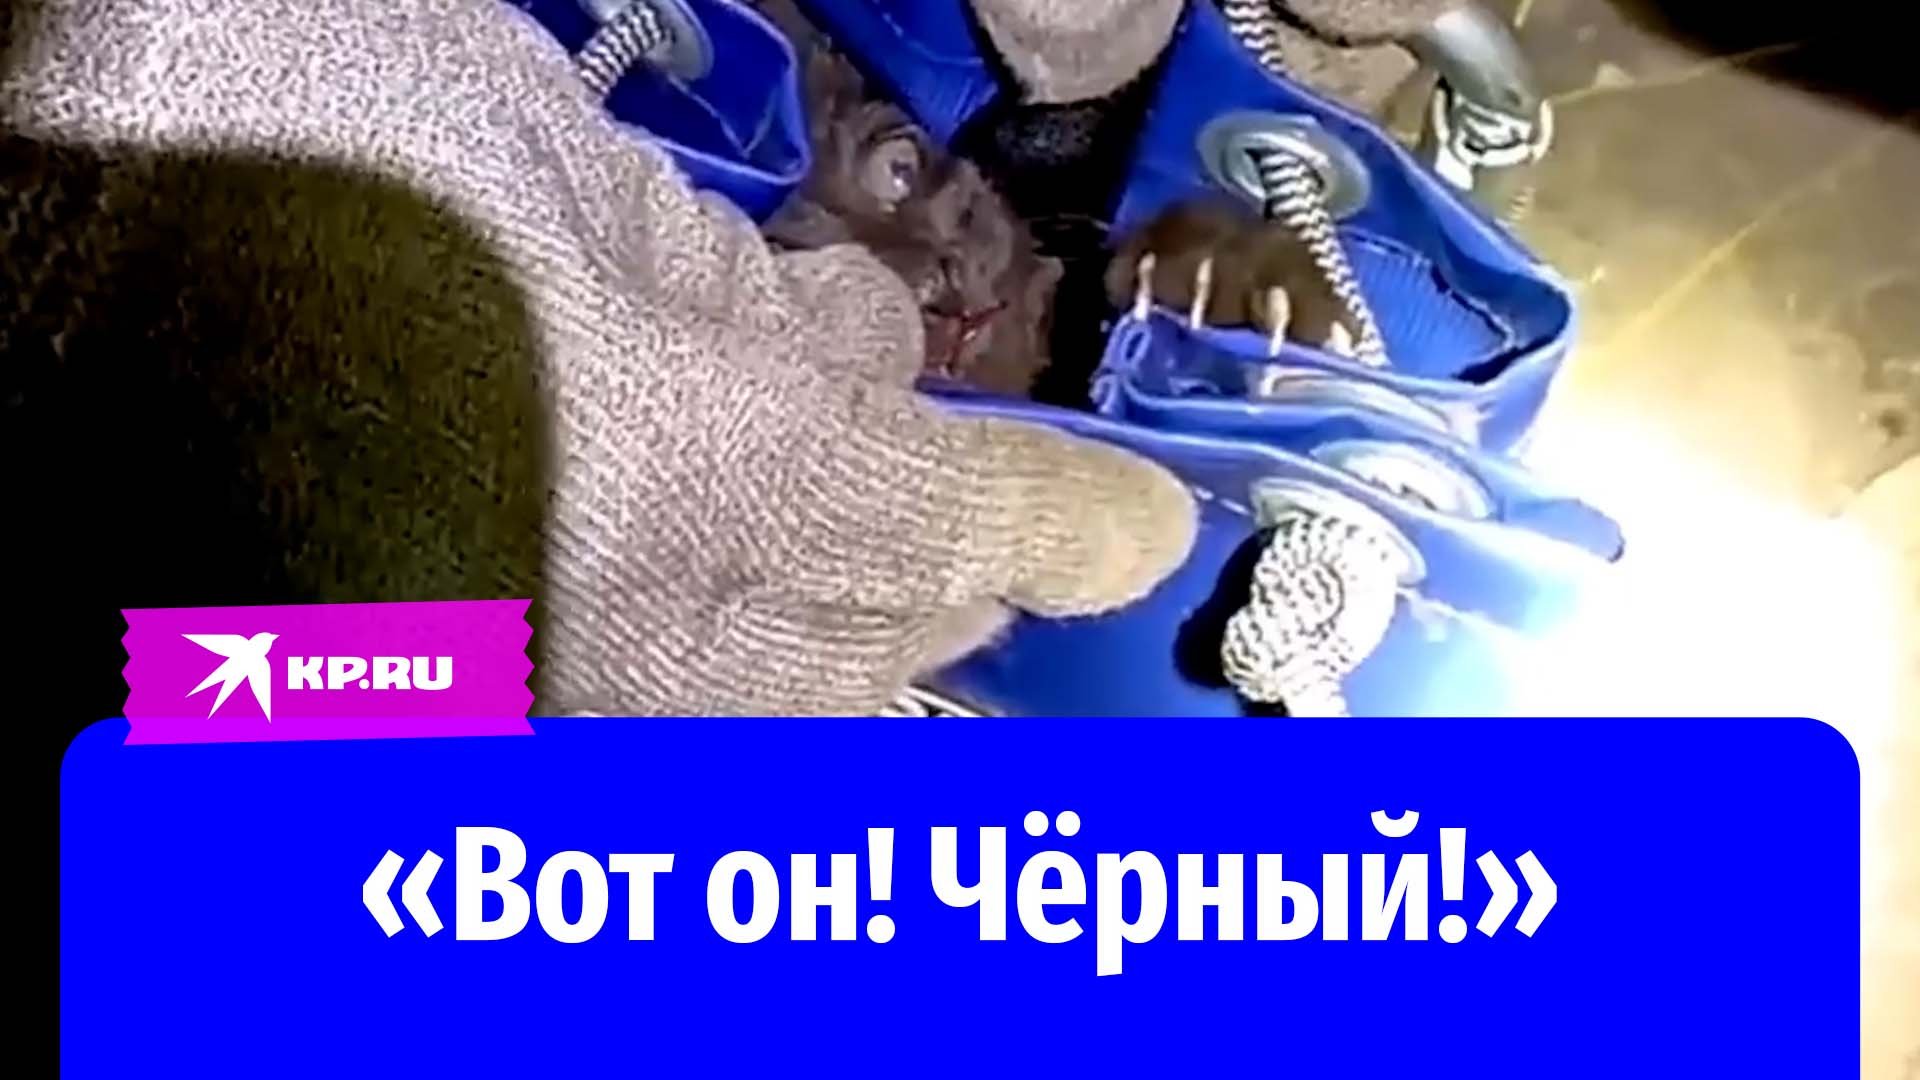 Спасатели достали кота со дна вентиляционной шахты в Нижегородской области